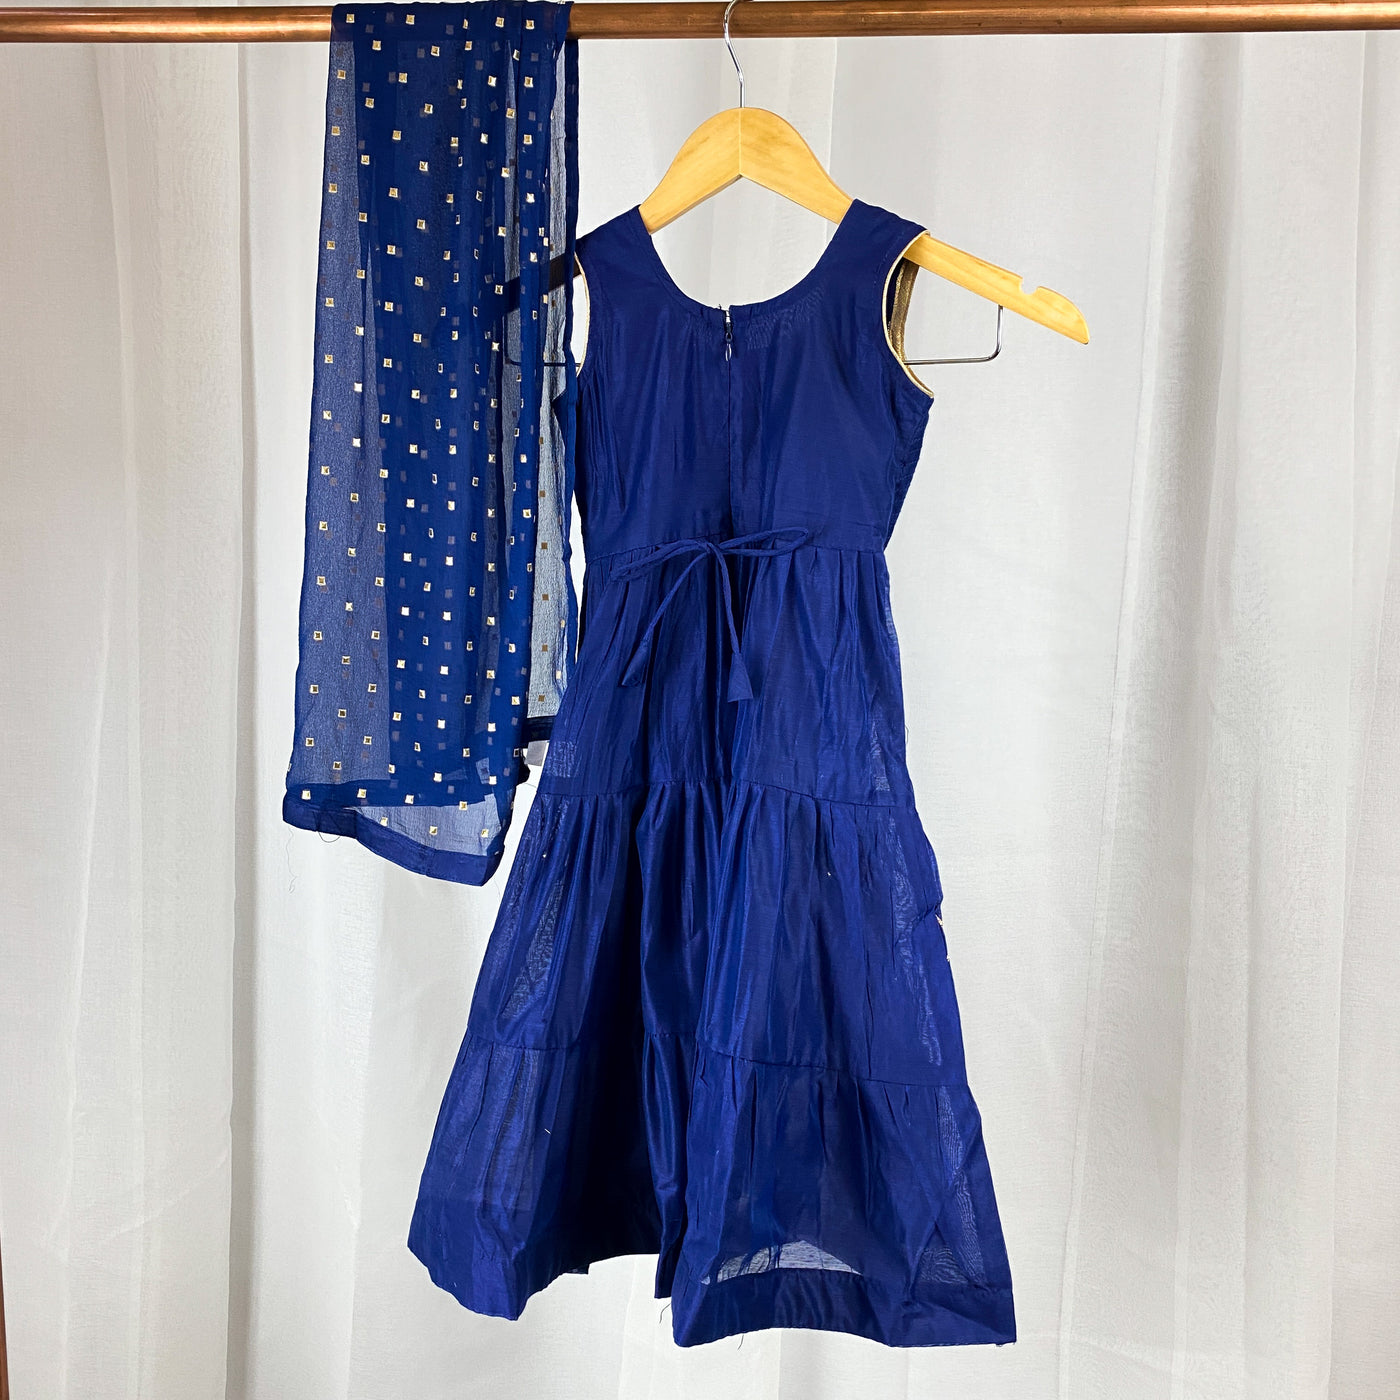 ODIKA - Royal Blue Toddler Girls Gown